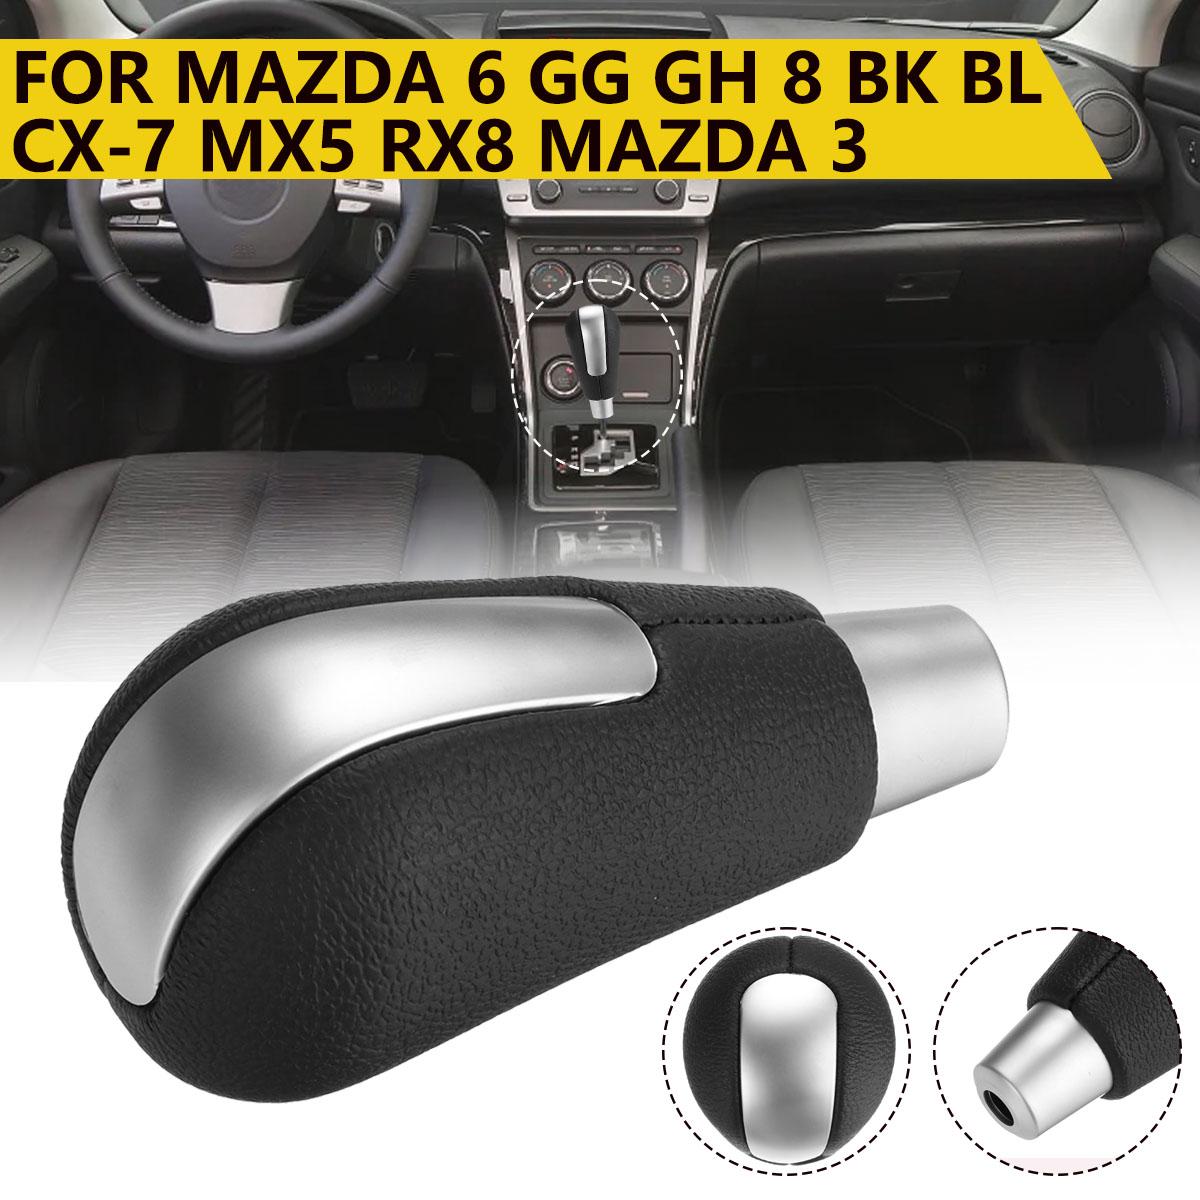 Car Gear Shift Knob For Mazda 6 GH Mazda 8 CX-7 MX5 RX8 Mazda 3 BK BL